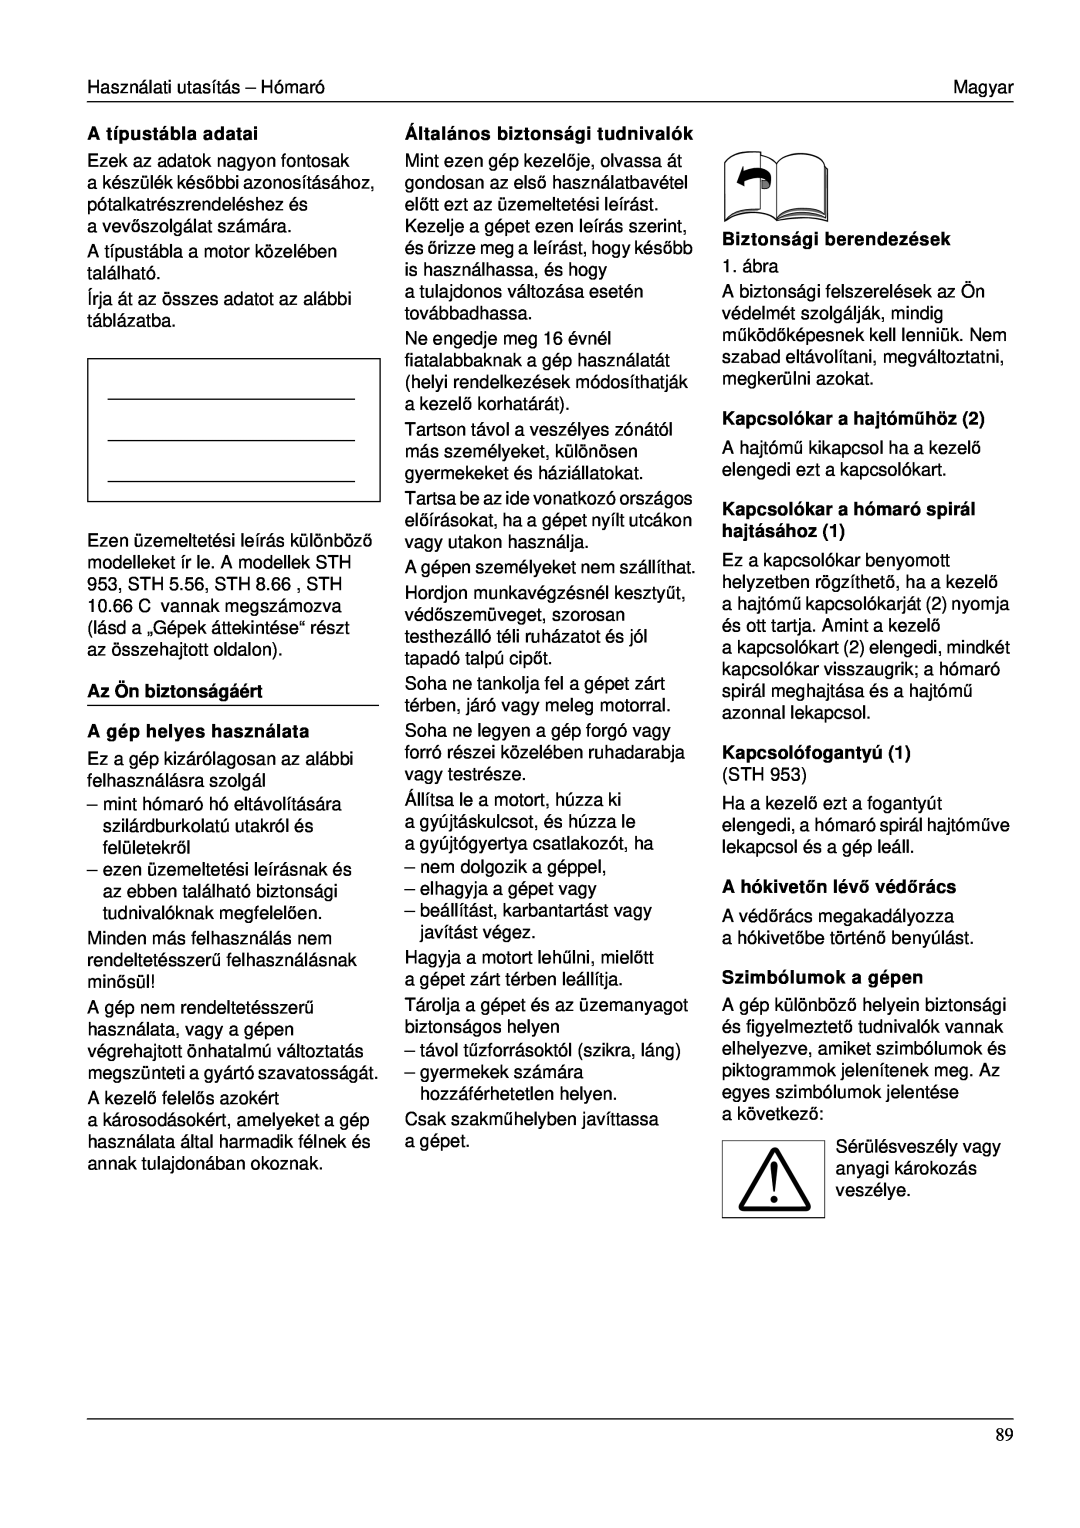 Karcher STH 953 manual A típustábla adatai, Az Ön biztonságáért A gép helyes használata, Általános biztonsági tudnivalók 